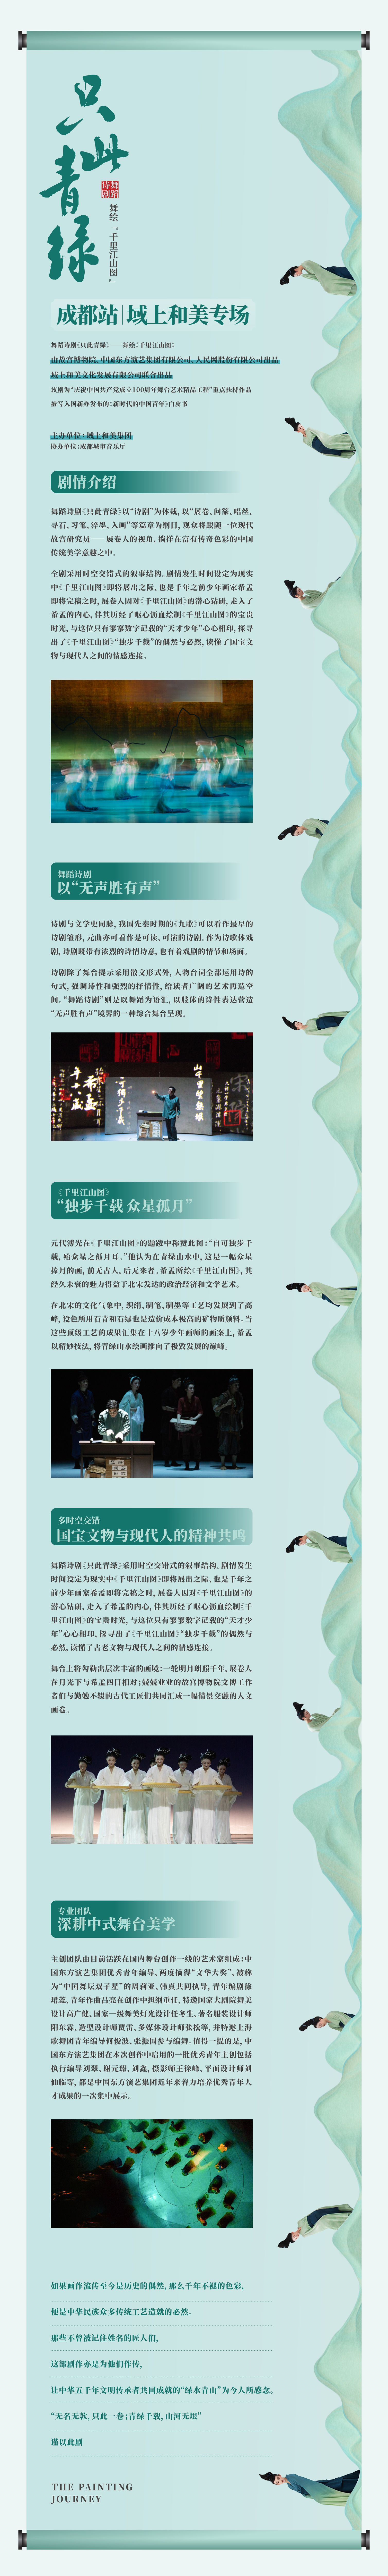 2022舞蹈诗剧《只此青绿》——舞绘《千里江山图》-成都站